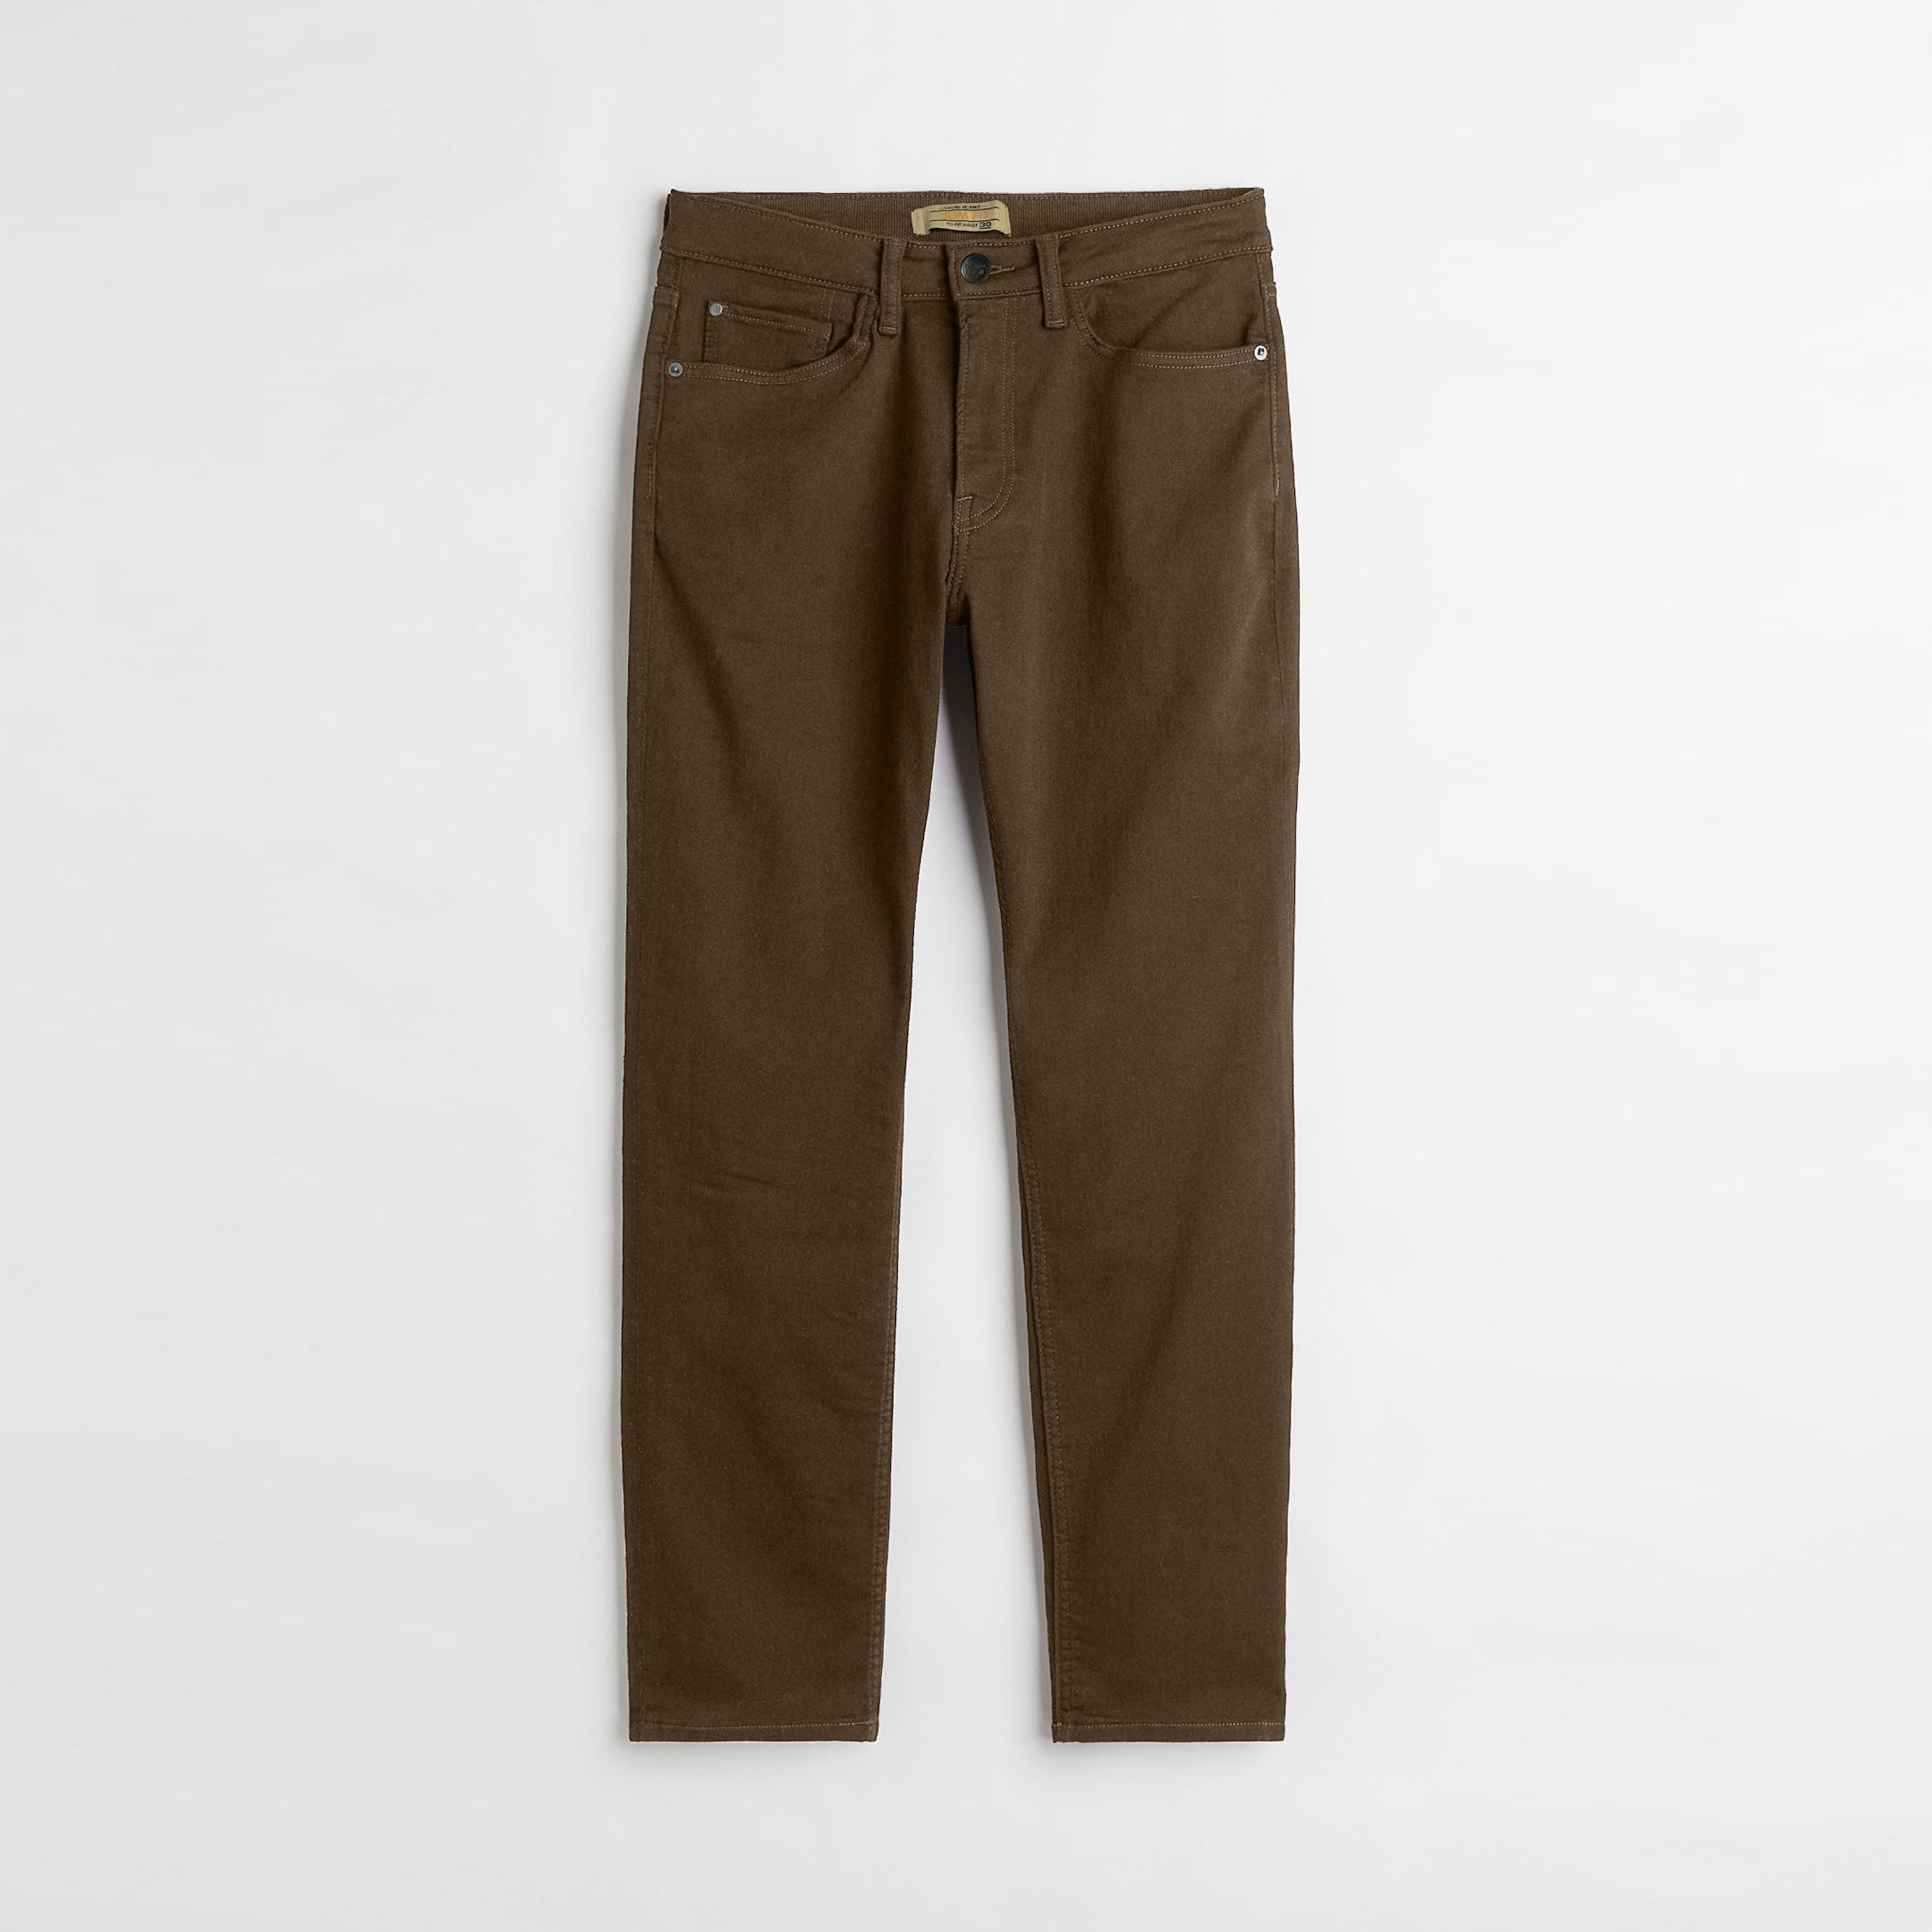 Men's Brown Chinos Pants